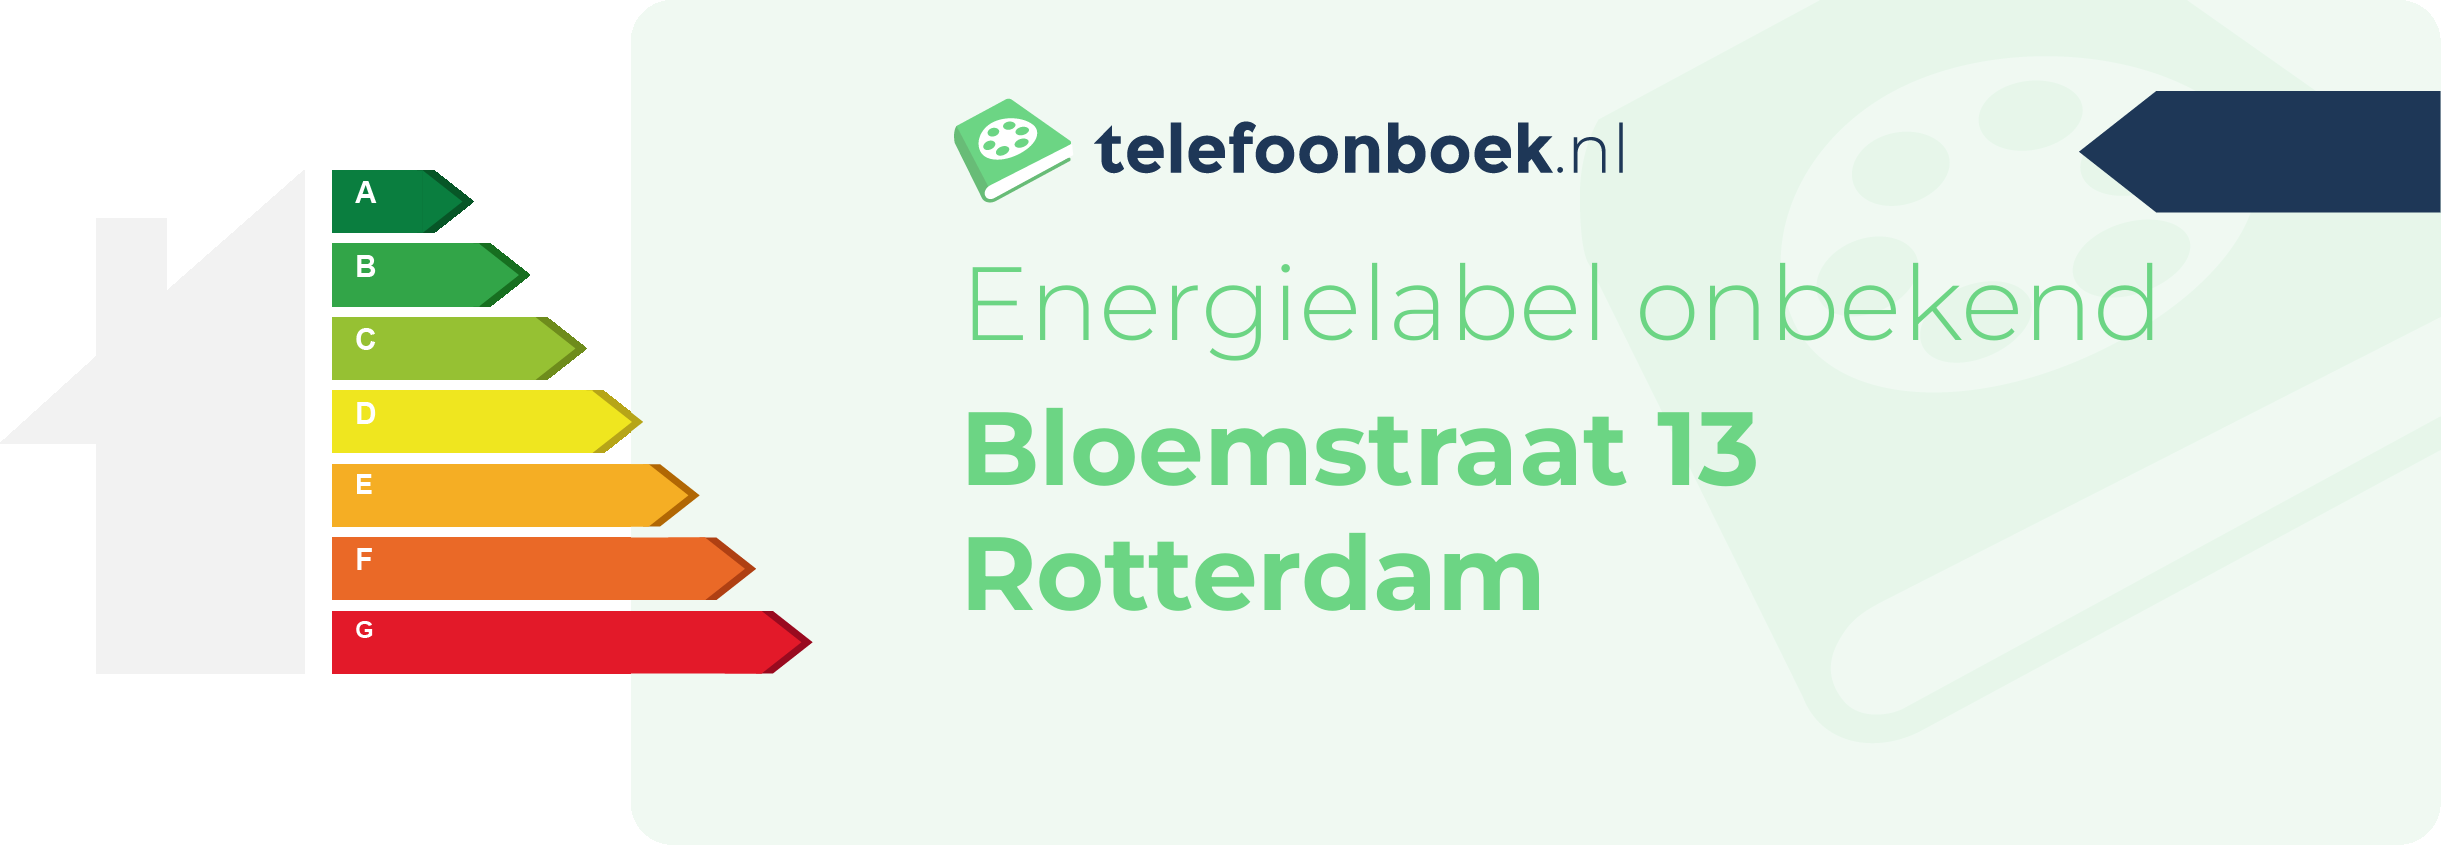 Energielabel Bloemstraat 13 Rotterdam